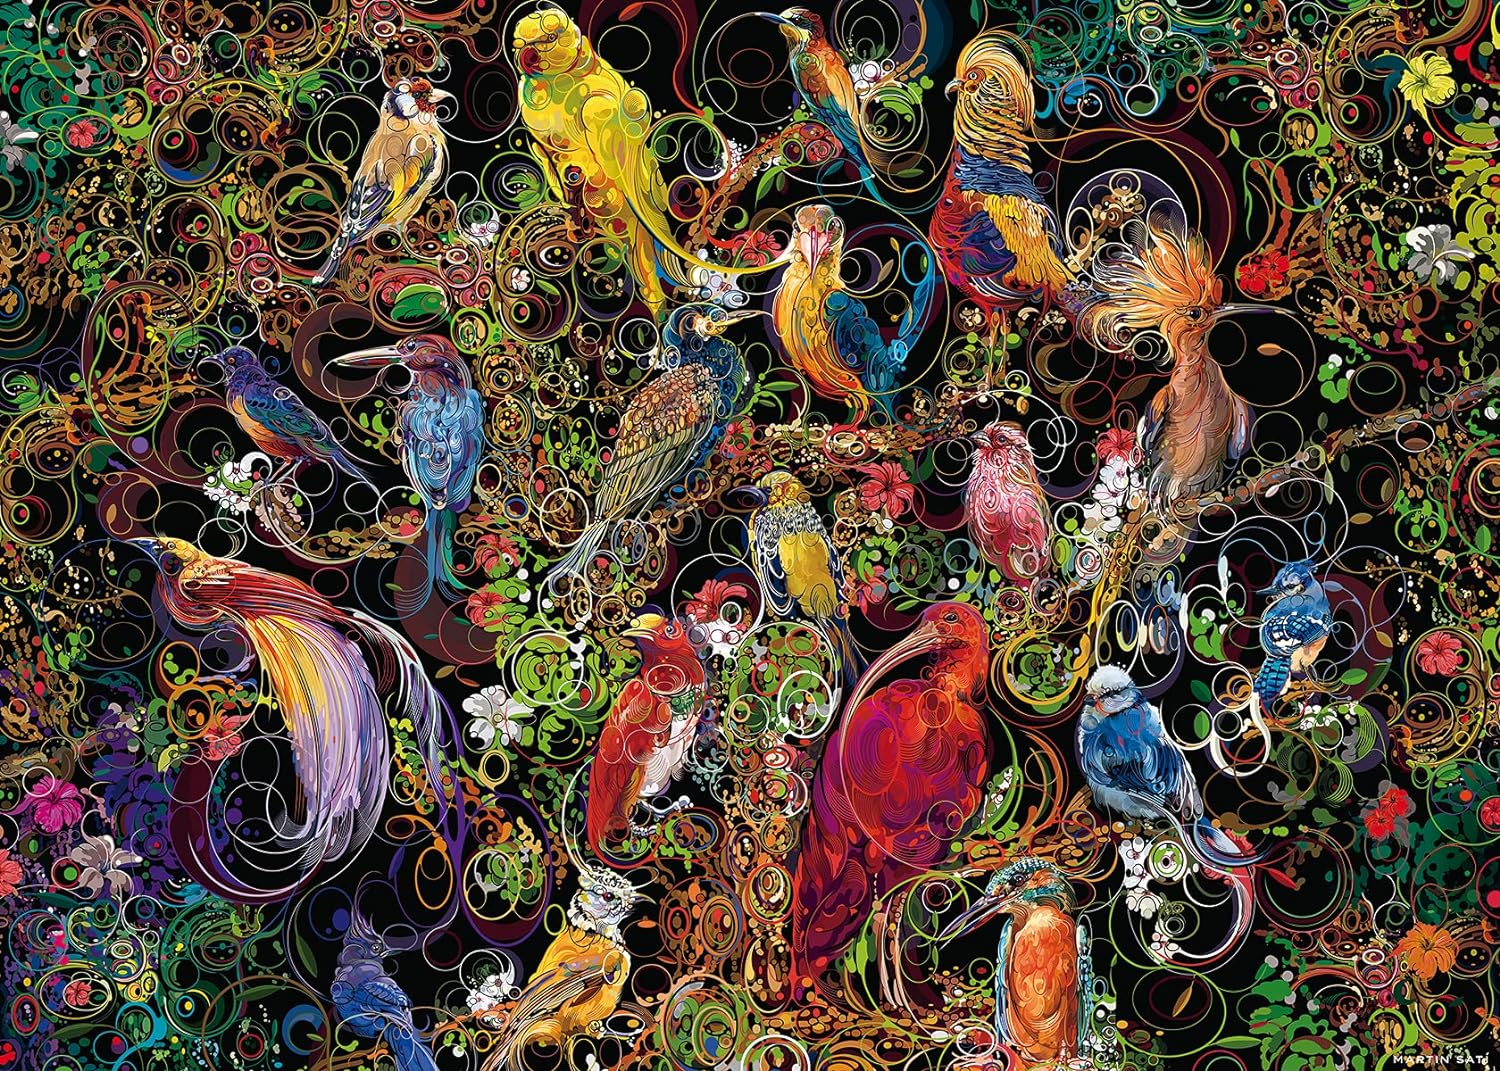 16832 - RAVENSBURGER - Uccelli d' arte  - 1000 pz - Puzzle